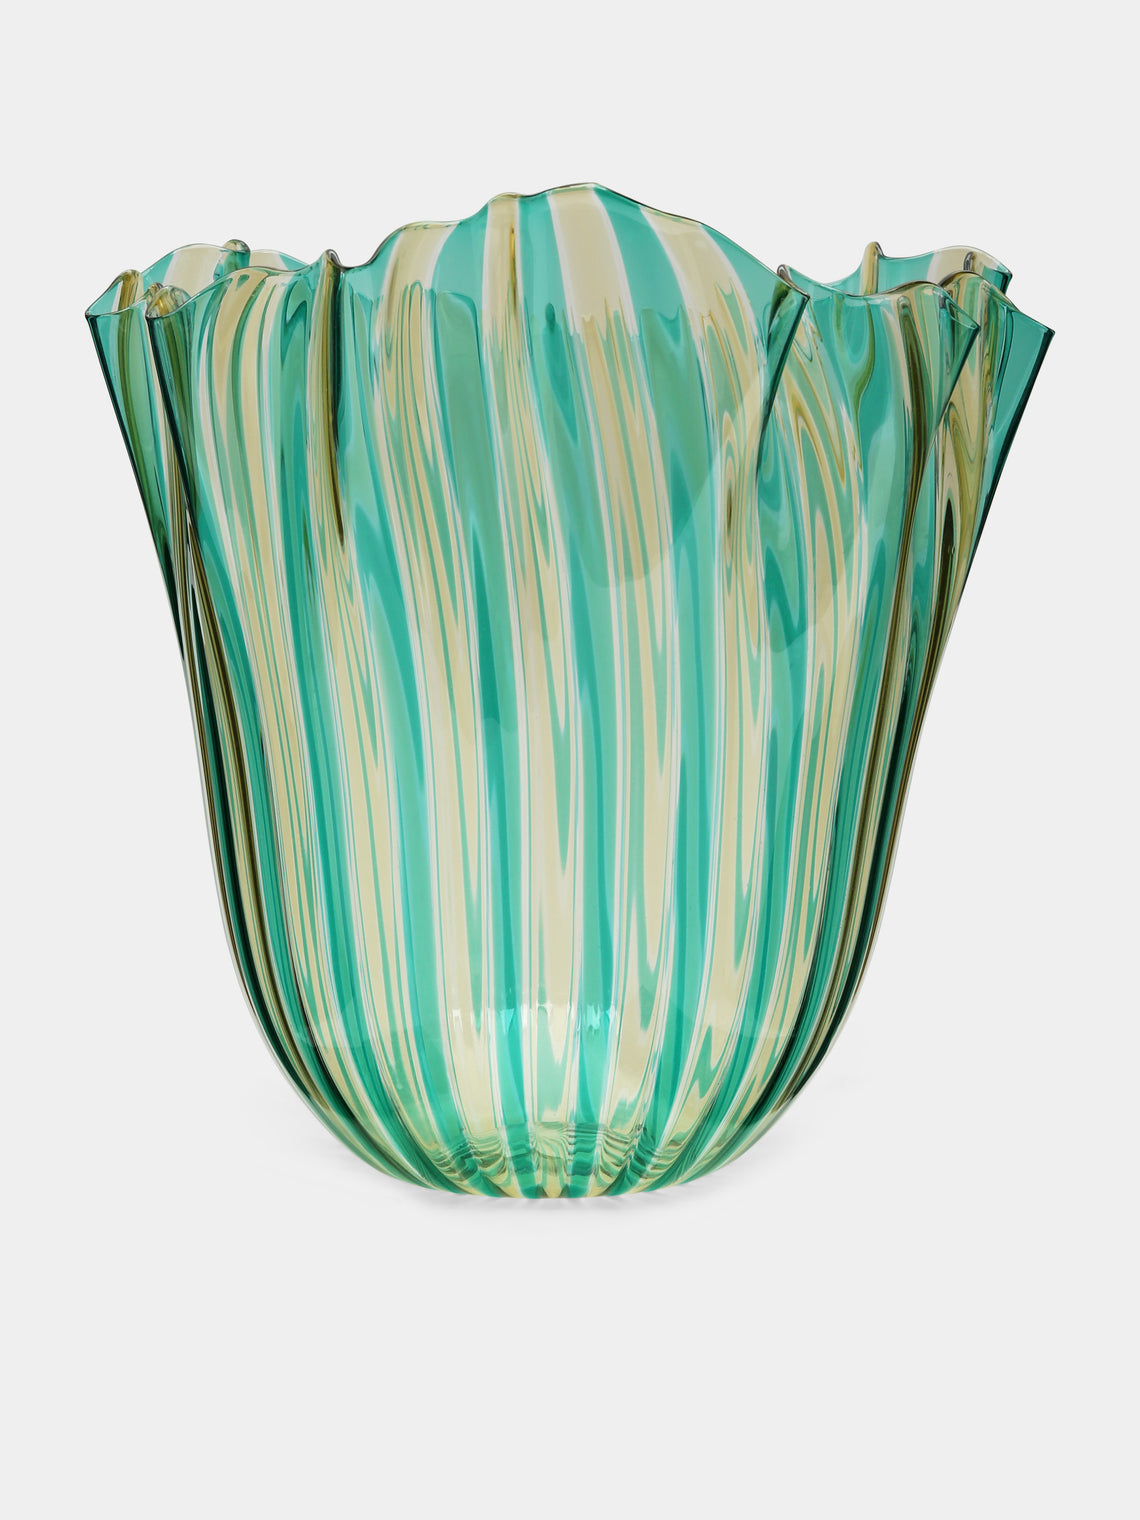 Venini - Fazzoletto a Canne Large Murano Glass Vase - Green - ABASK - 